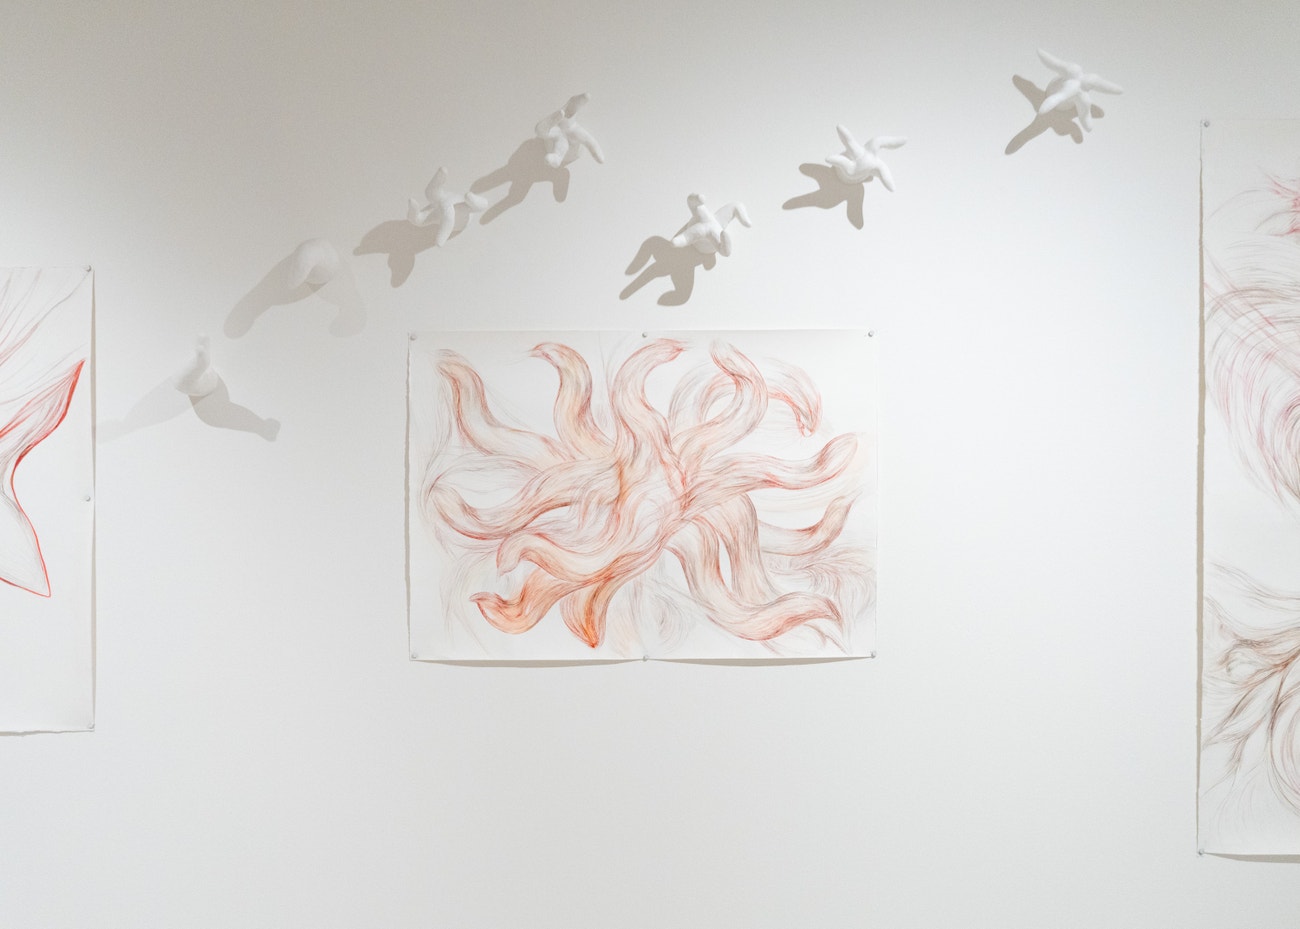 Filomena Borecká, Lapáni po dechu, 2014, kresba tuší a barevnými tužkami, akvarel a zavěšené plastiky. Hledání místa, polyesterová sádra, 2020 – 2024